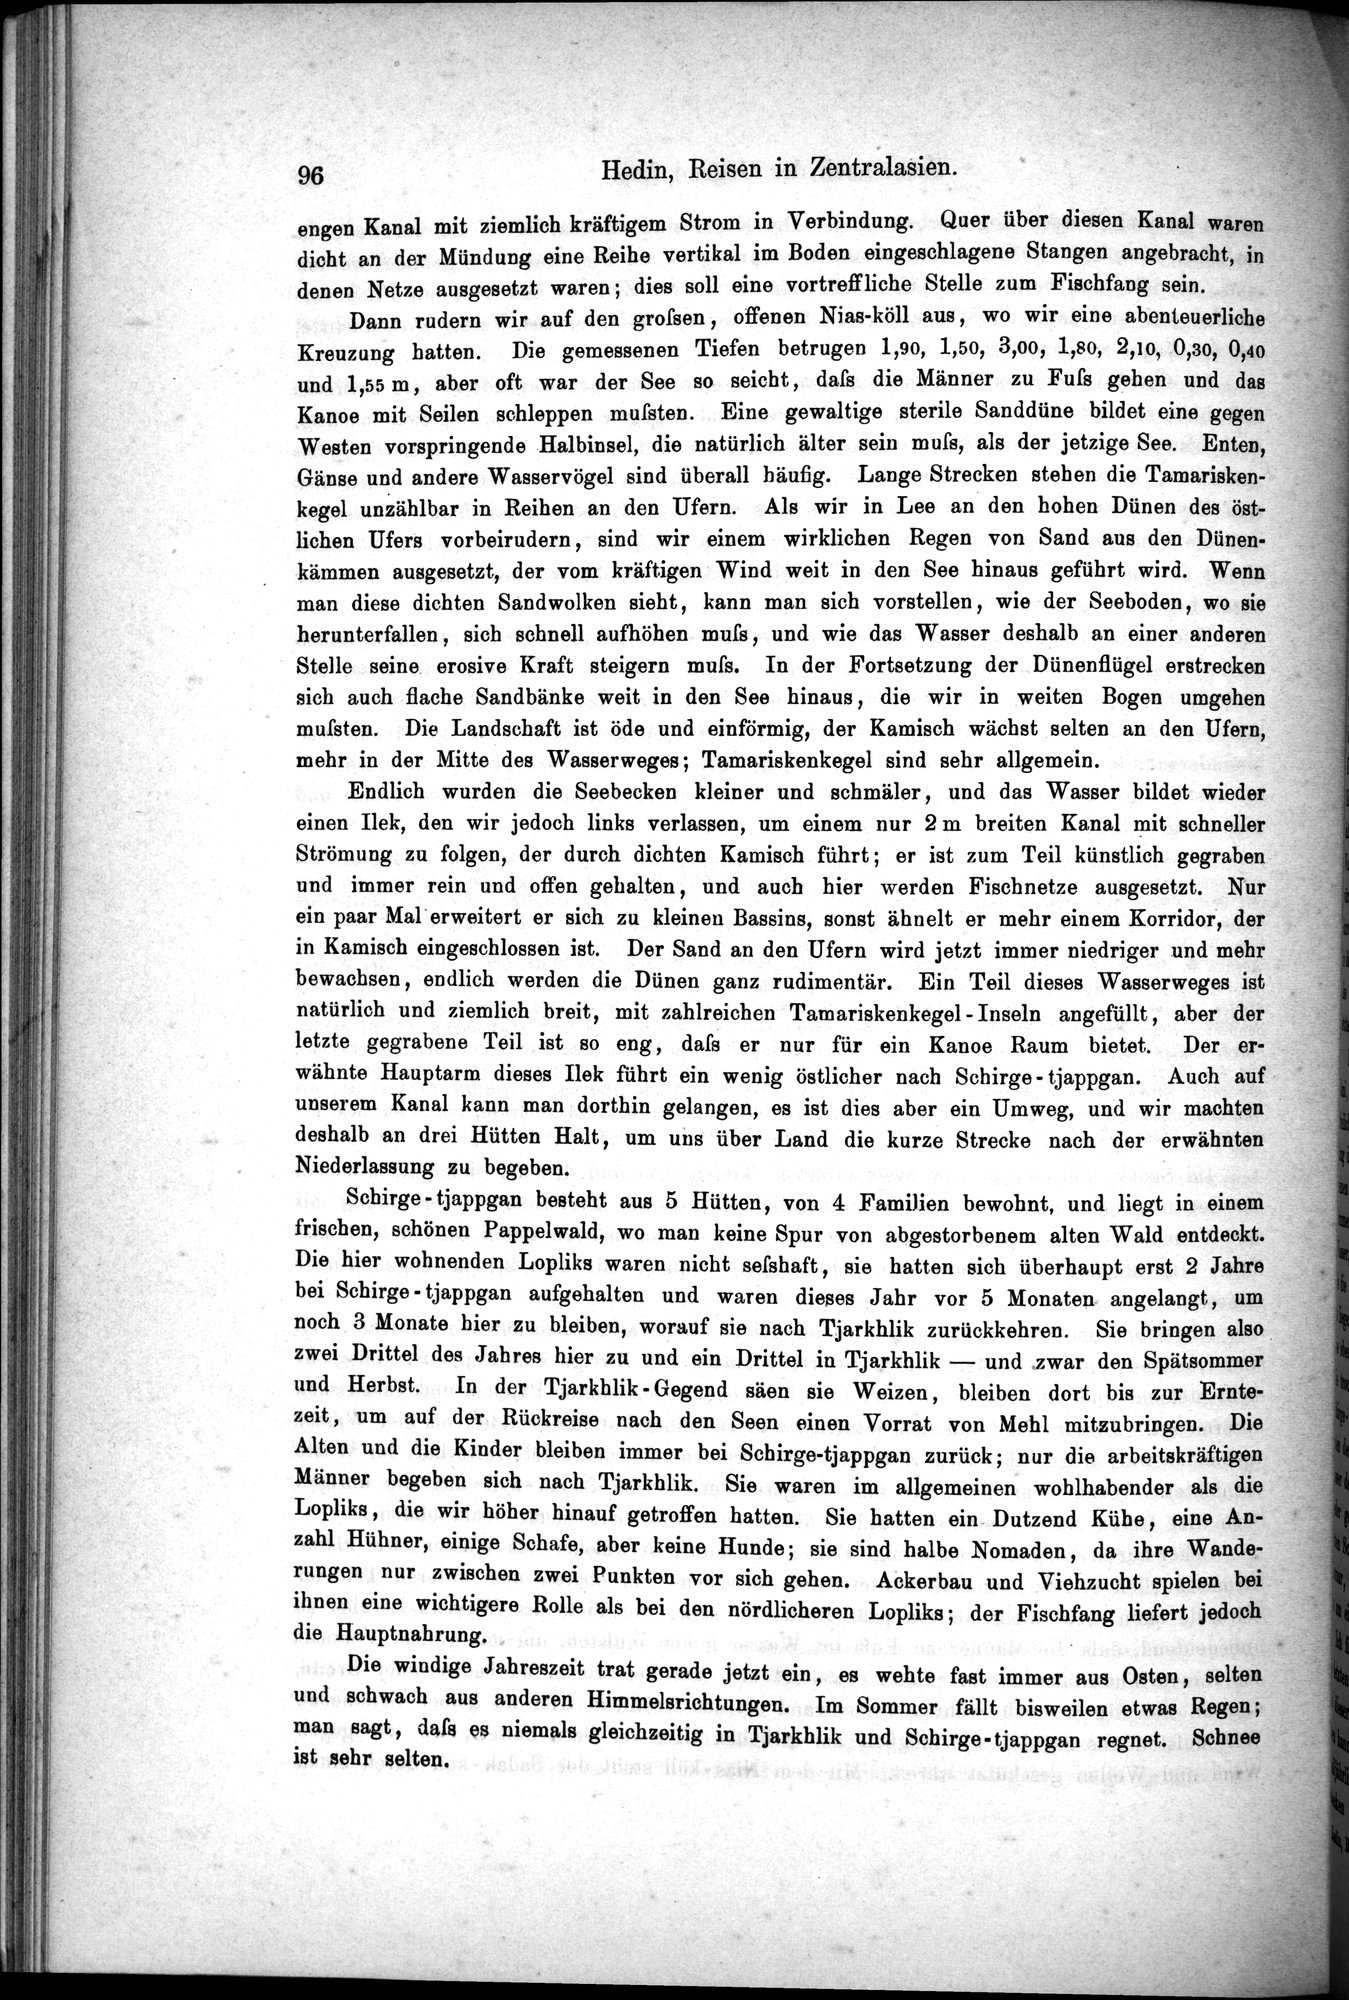 Die Geographische-Wissenschaftlichen Ergebnisse meiner Reisen in Zentralasien, 1894-1897 : vol.1 / Page 108 (Grayscale High Resolution Image)